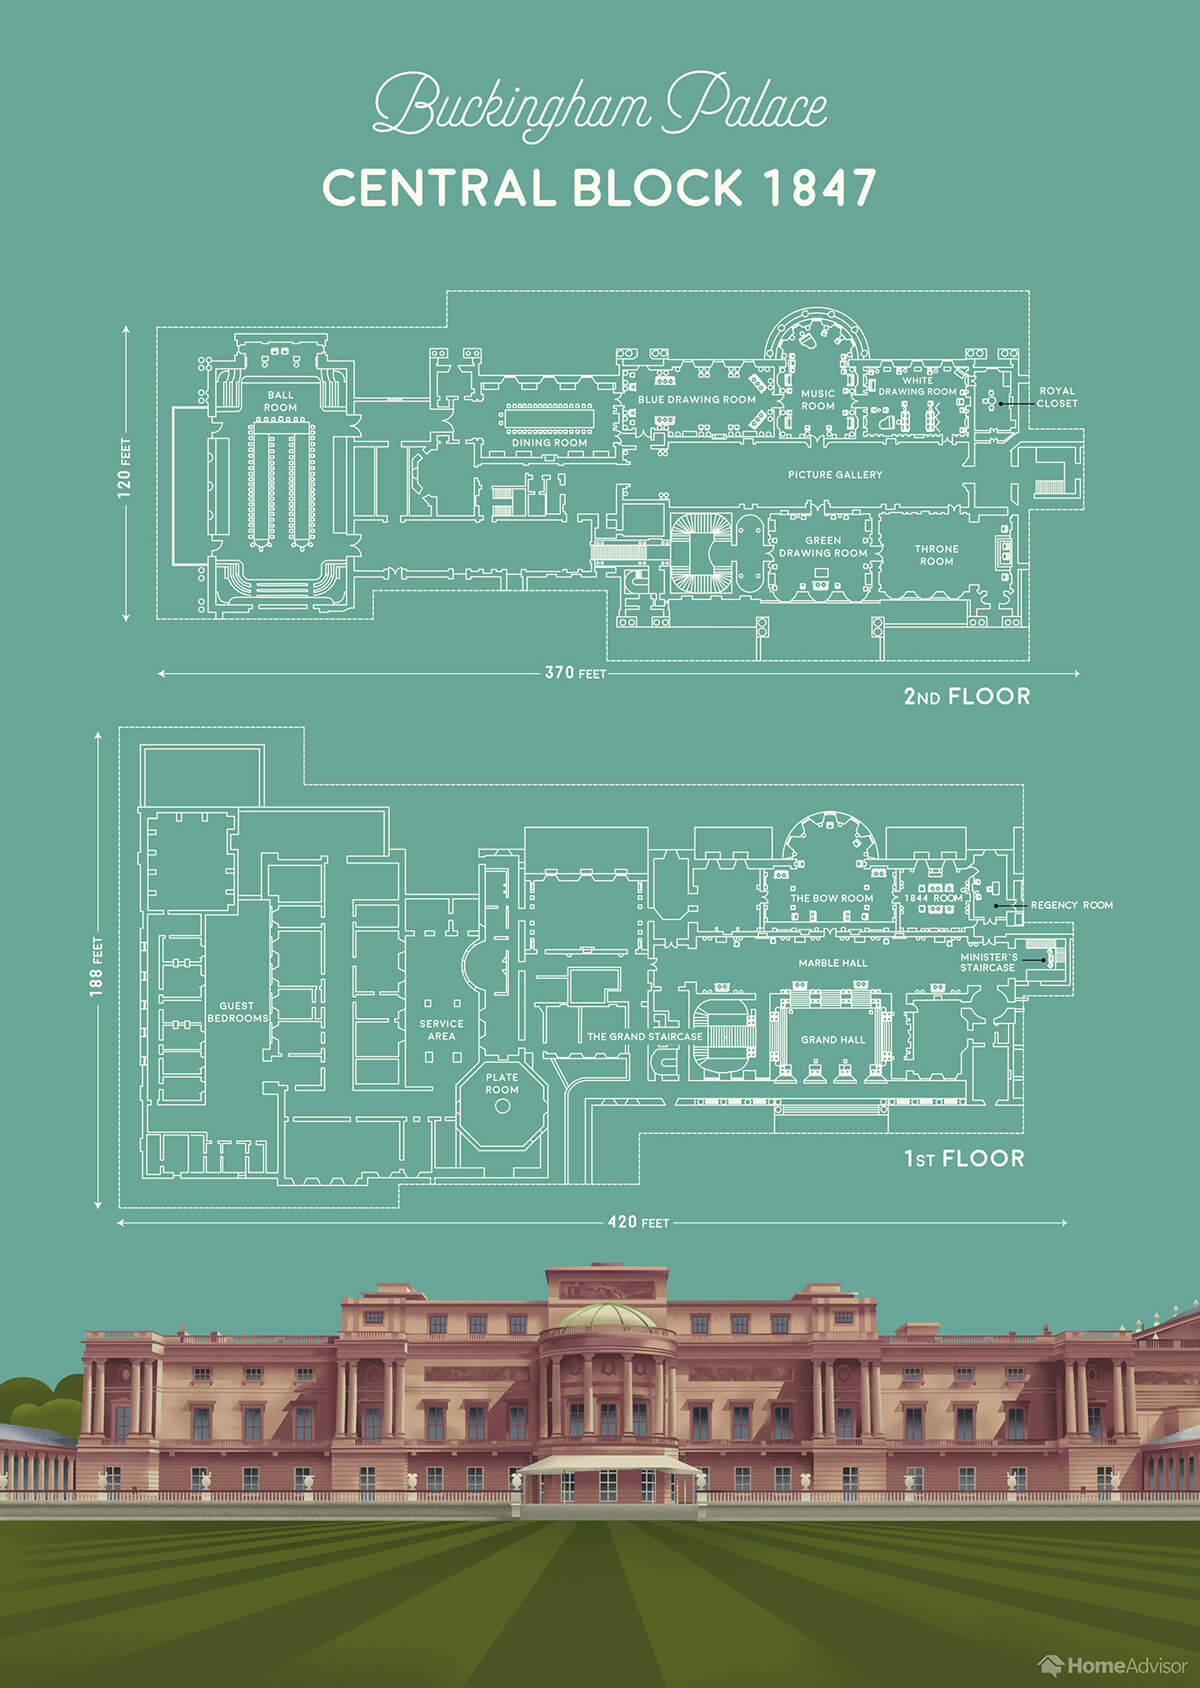 Как устроен Букингемский дворец новые постеры с поэтажными планами